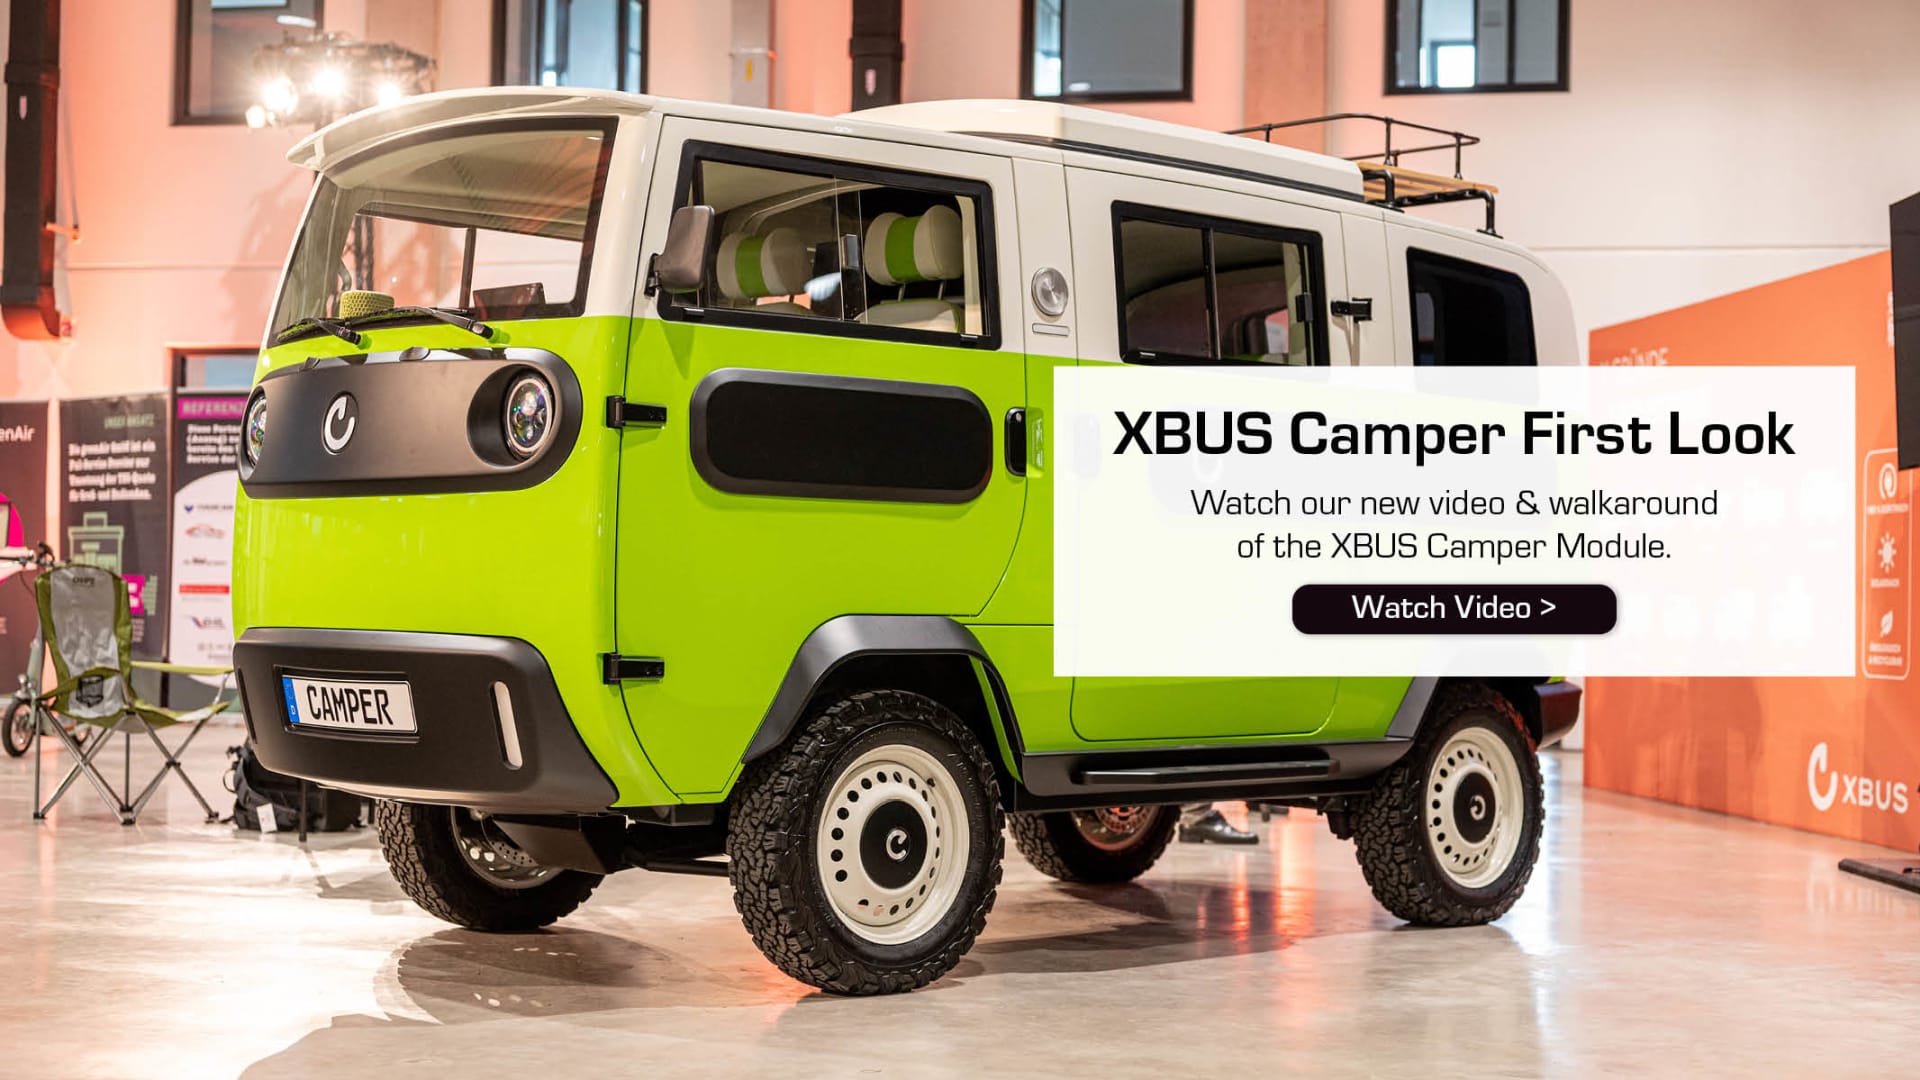 XBUS Camper First Look &amp; Walkaround Video